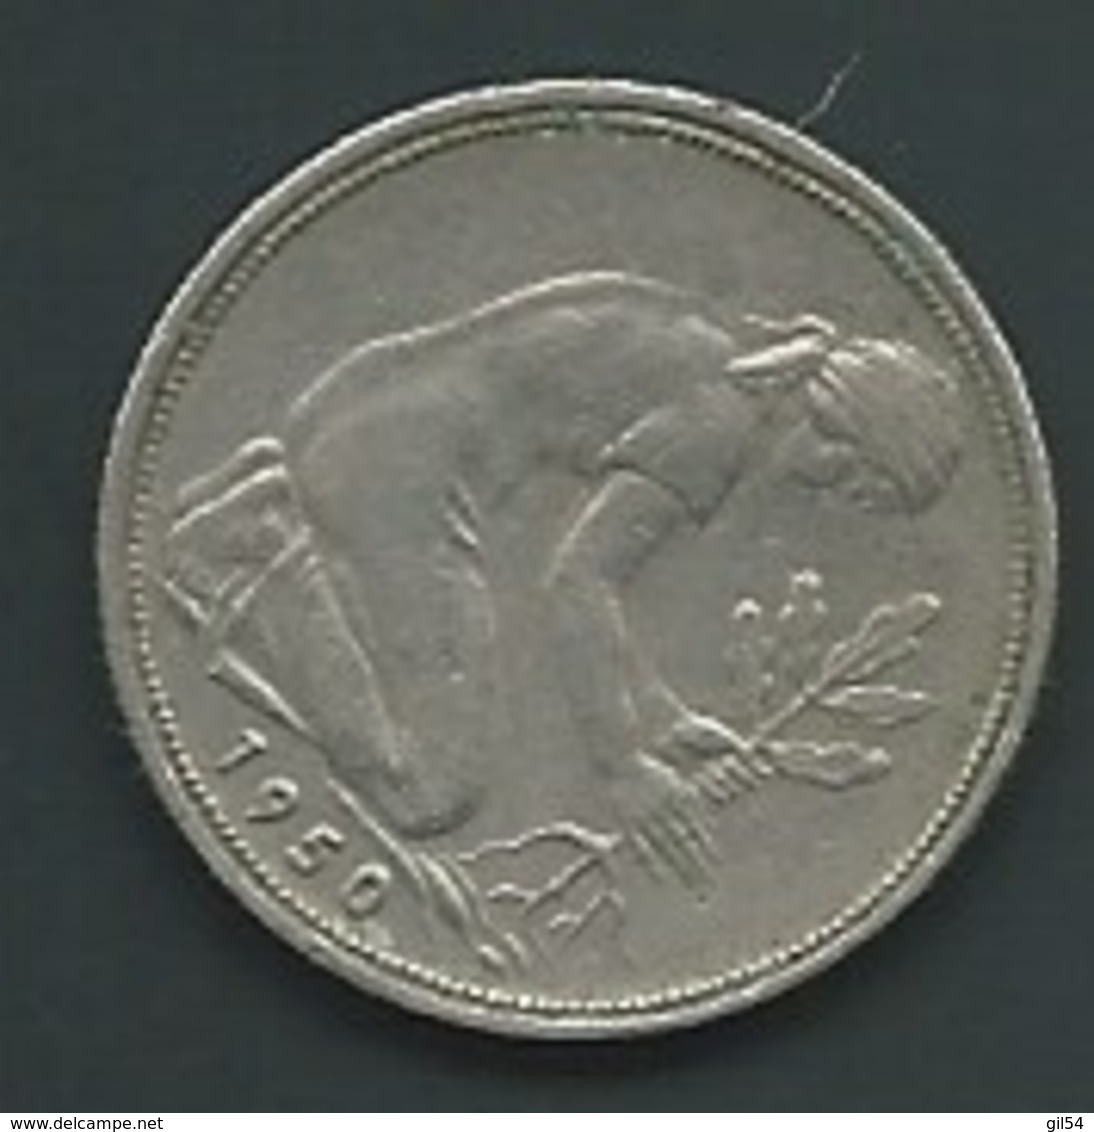 GERMANY 50 Pfennig 1950 F   PIA227 07 - 50 Pfennig